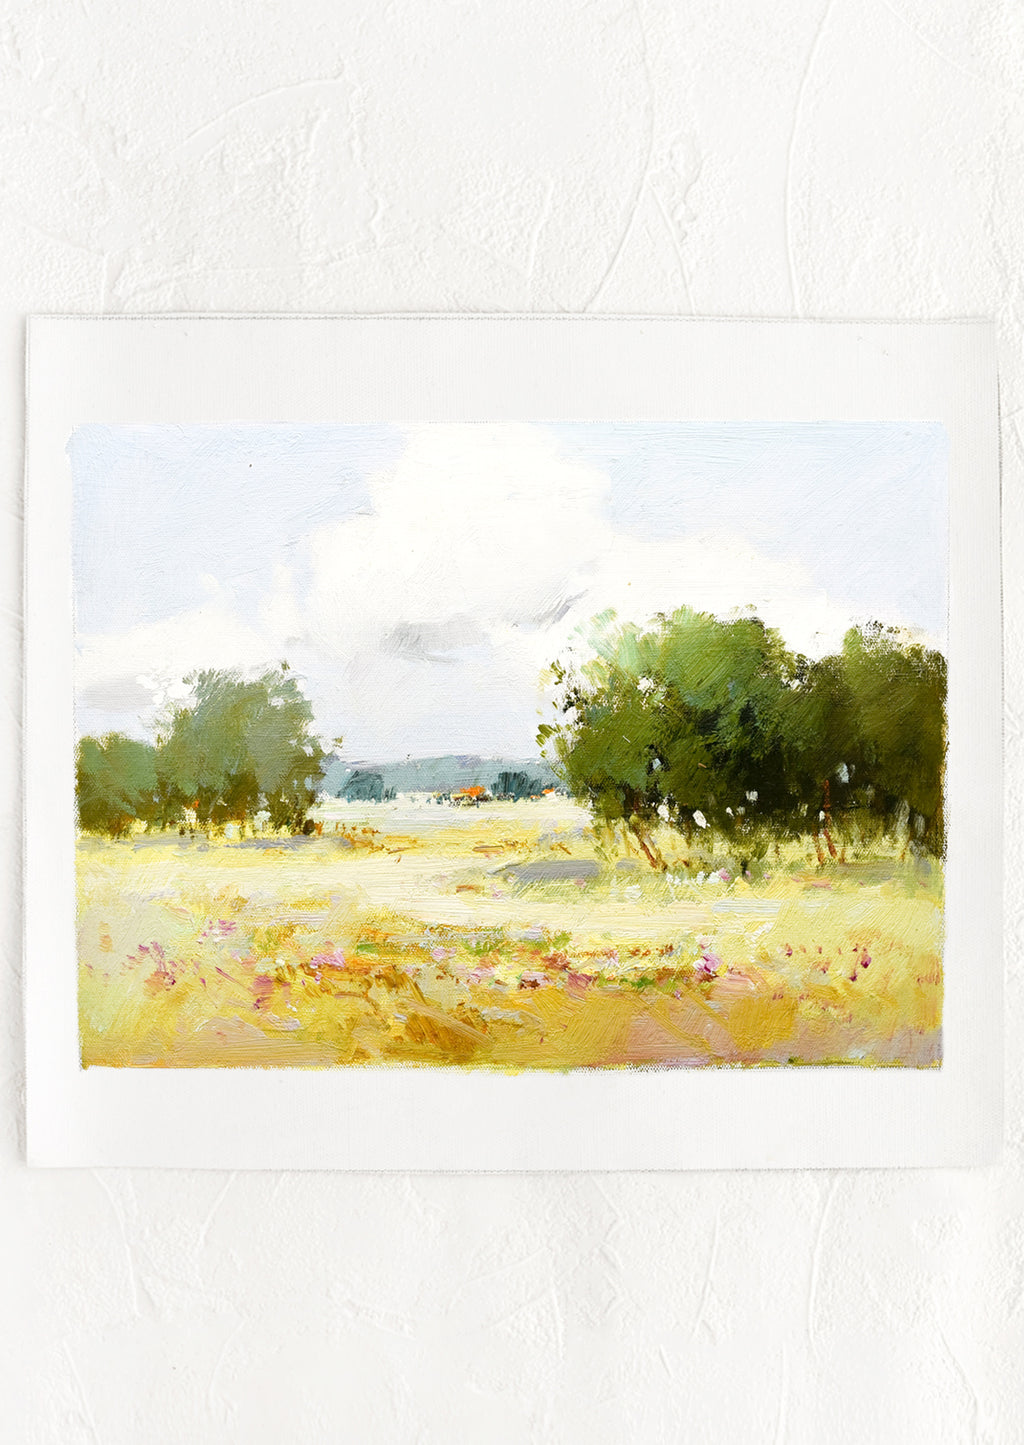 1: An original pastoral landscape oil painting.